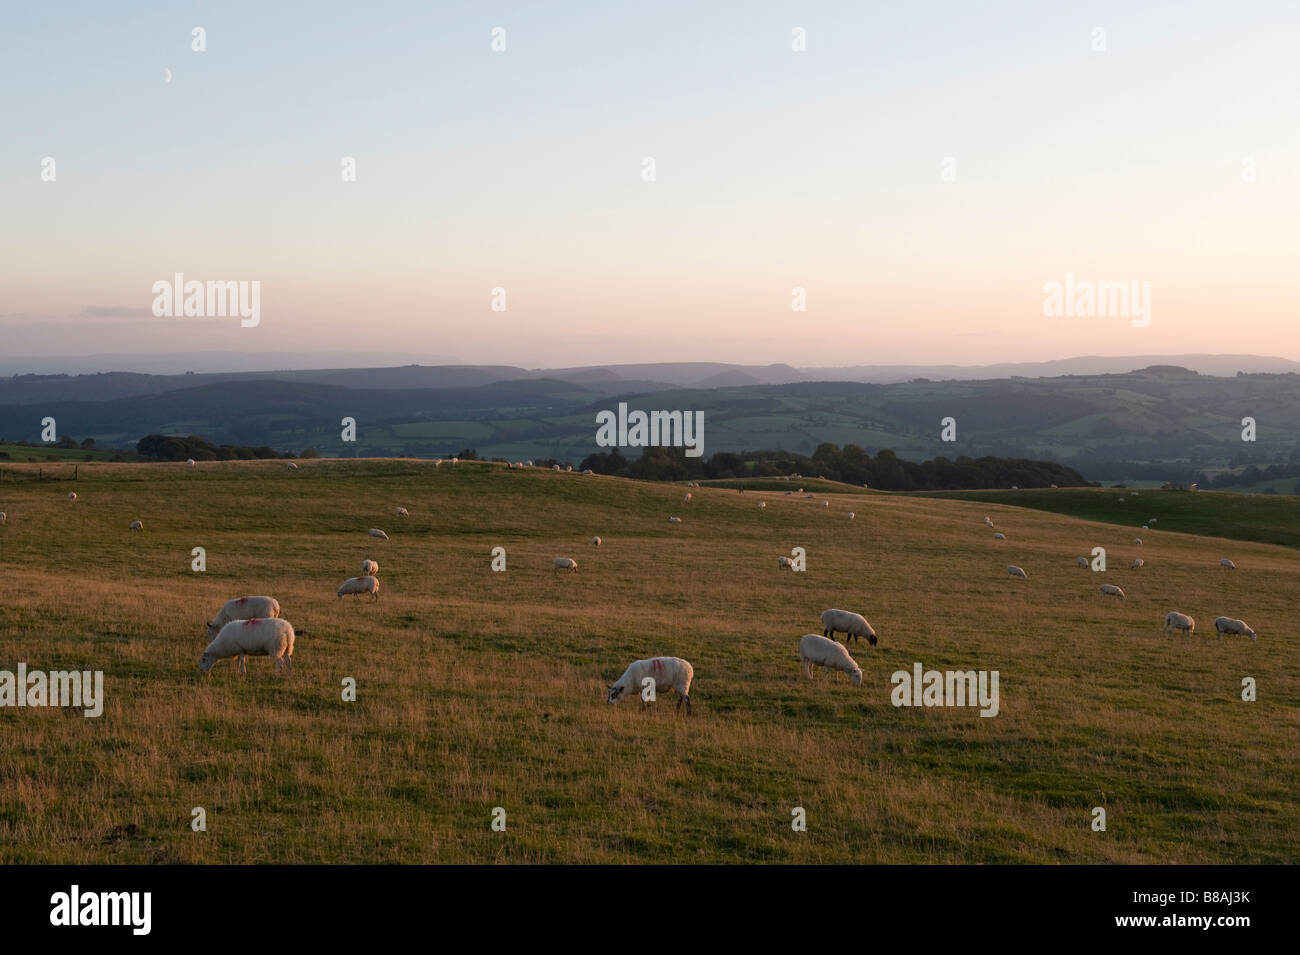 Les moutons paissent pacifiquement au crépuscule sur la colline de Stonewall (colline de Reeves) aux frontières galloises, jusqu'à récemment le site d'un projet de ferme éolienne Banque D'Images